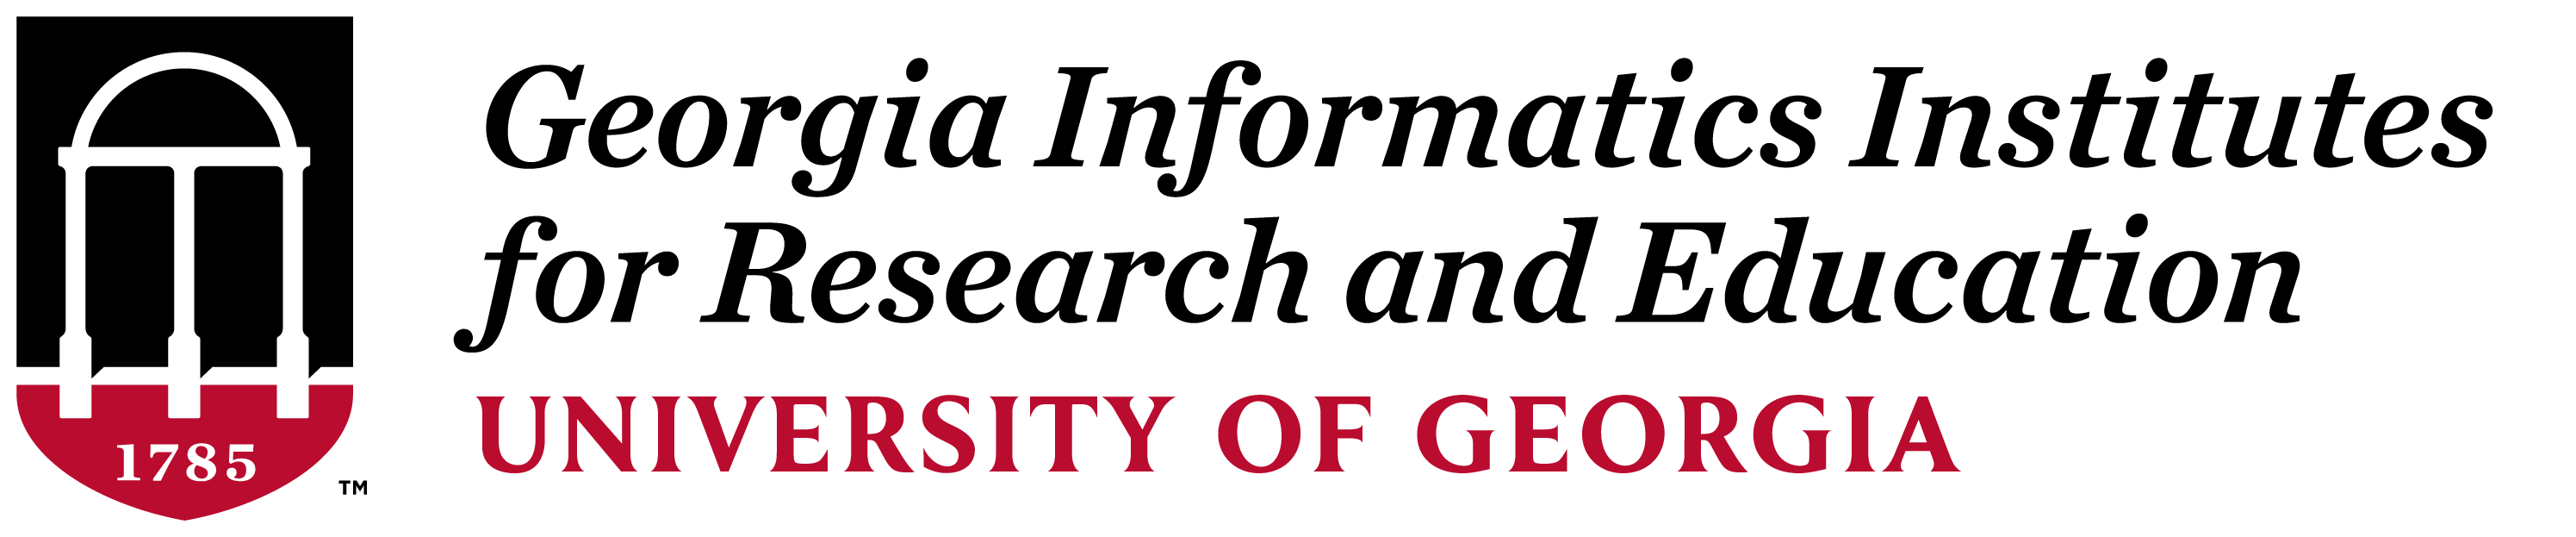 Georgia Informatics Institutes